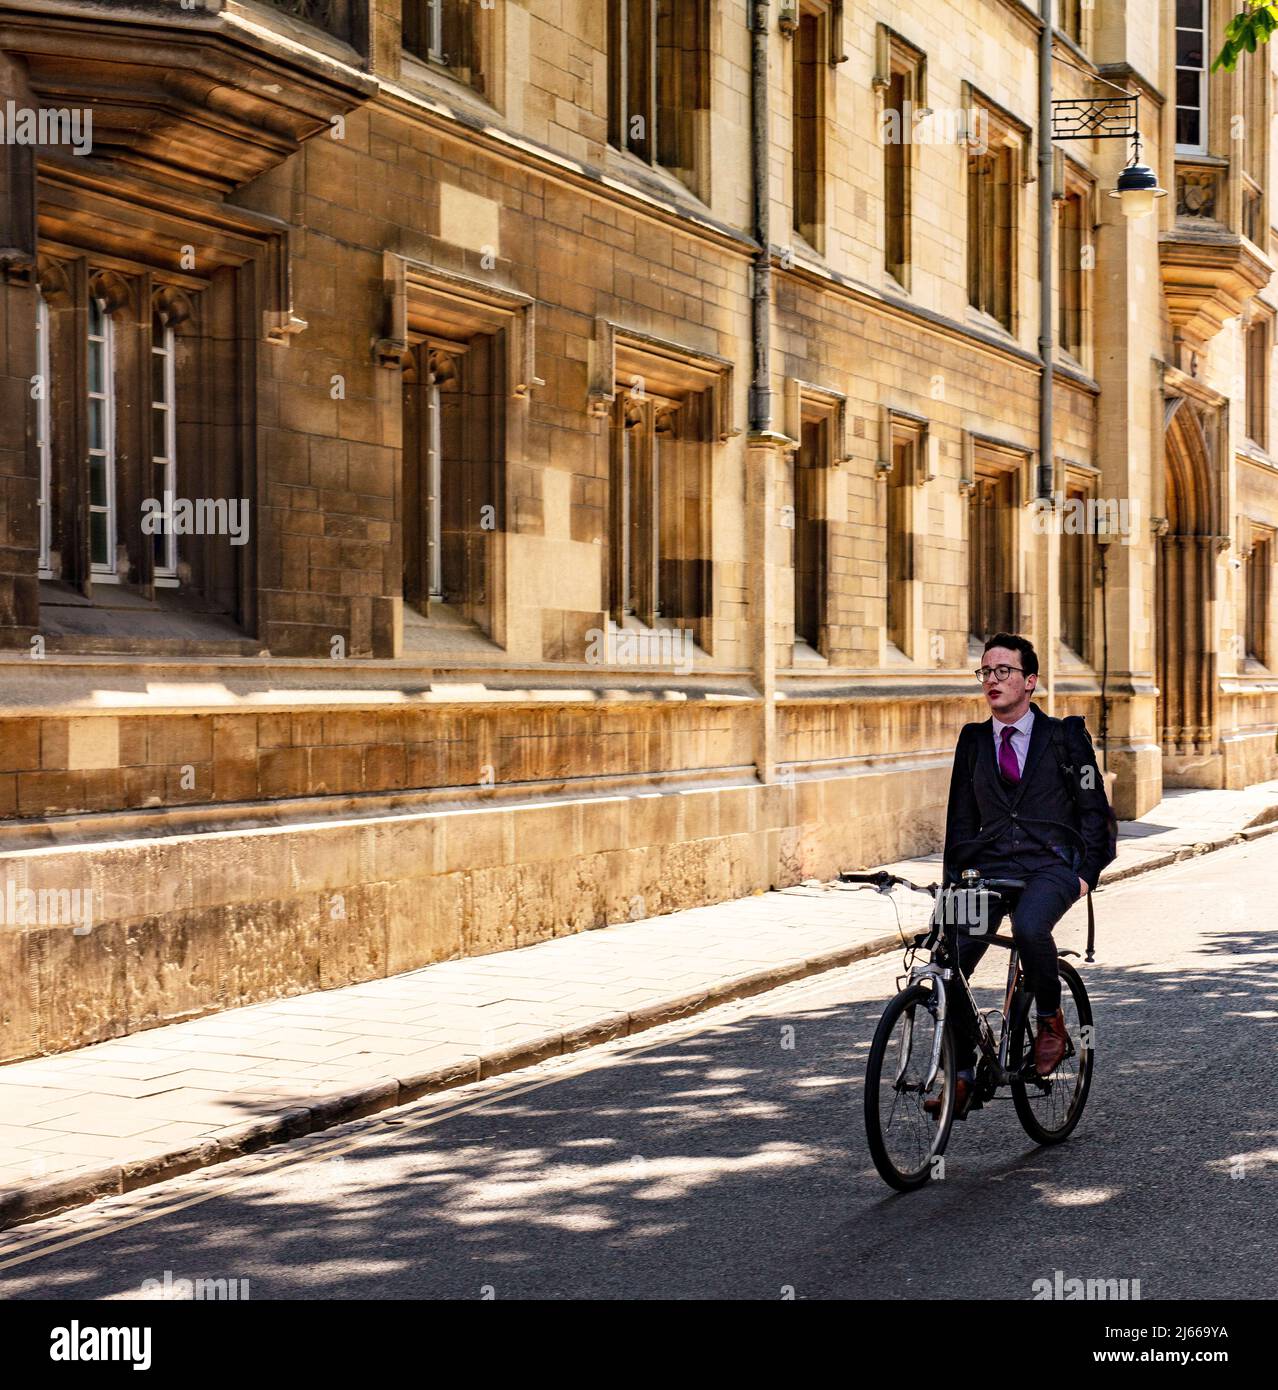 Oxford, Großbritannien; Mann, der in einem Anzug ohne Hände am Lenker unterwegs ist, die Turn Street hinunter, mit Exeter College hinter sich Stockfoto